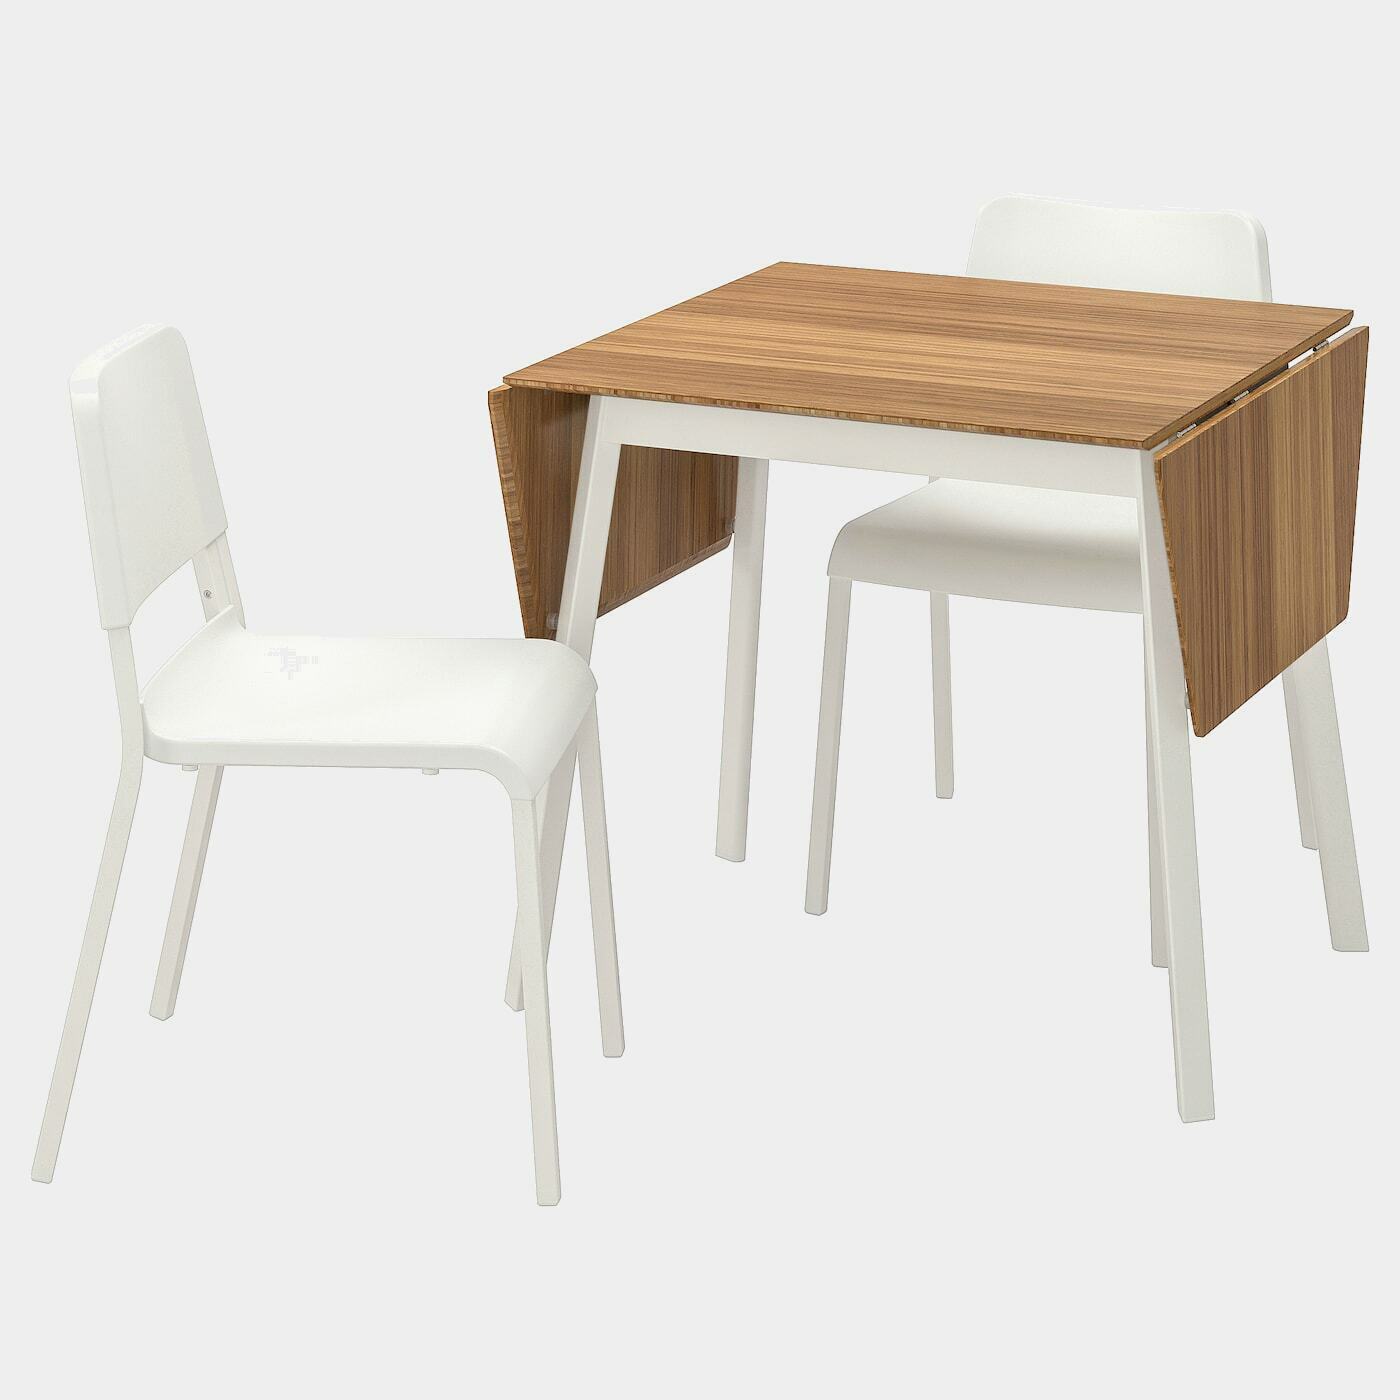 IKEA PS 2012 / TEODORES Tisch und 2 Stühle  - Essplatzgruppe - Möbel Ideen für dein Zuhause von Home Trends. Möbel Trends von Social Media Influencer für dein Skandi Zuhause.